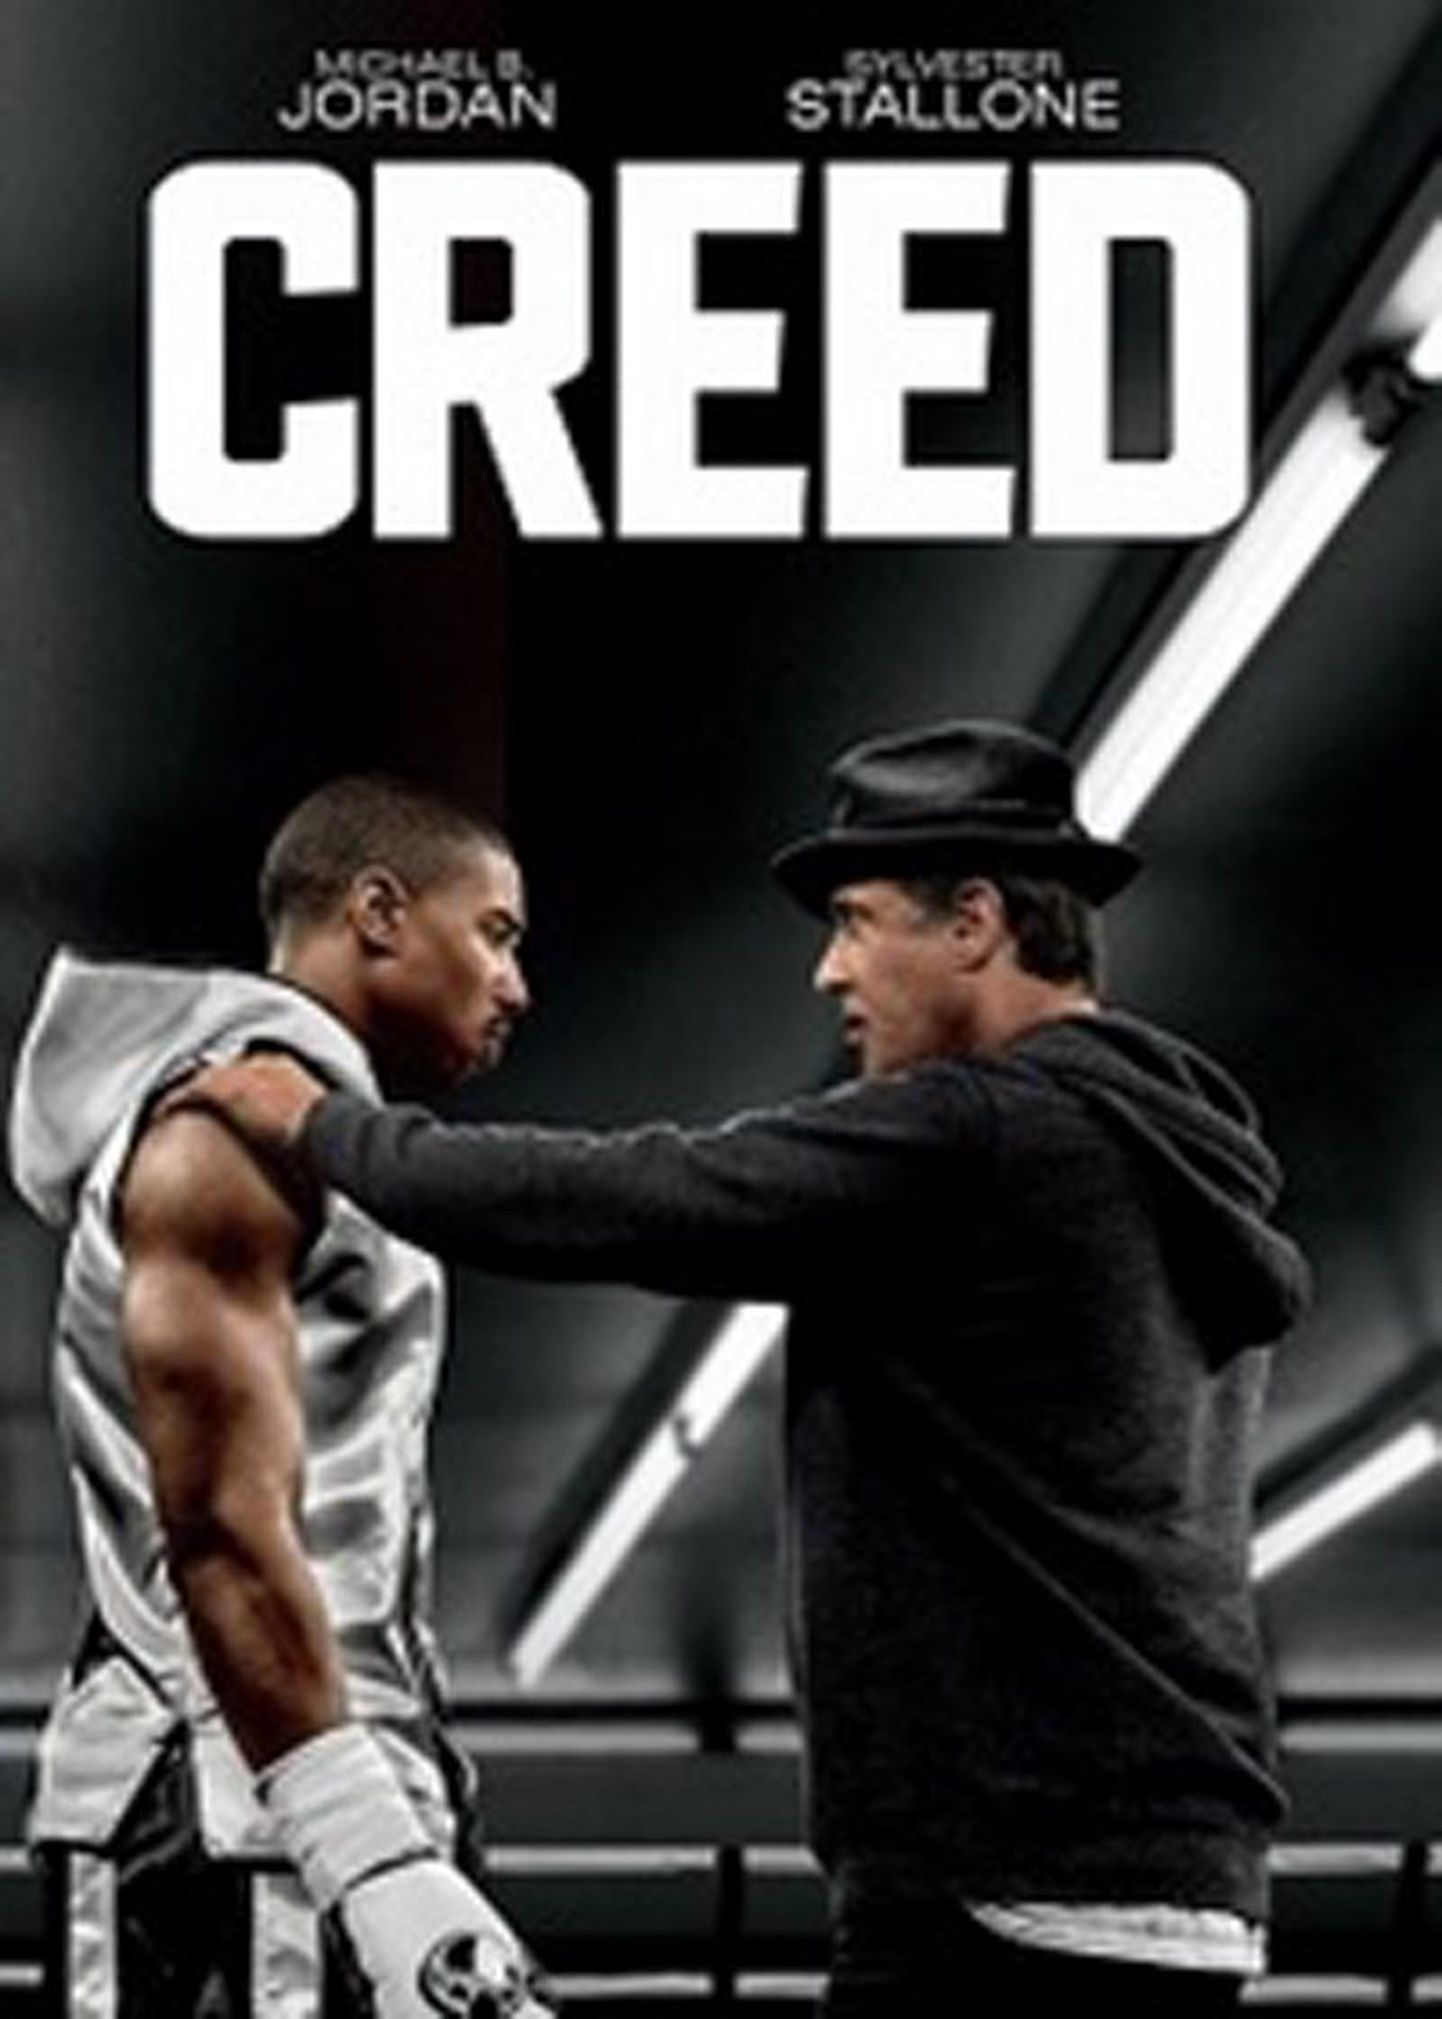 “Creed: Rocky pärand”, draama